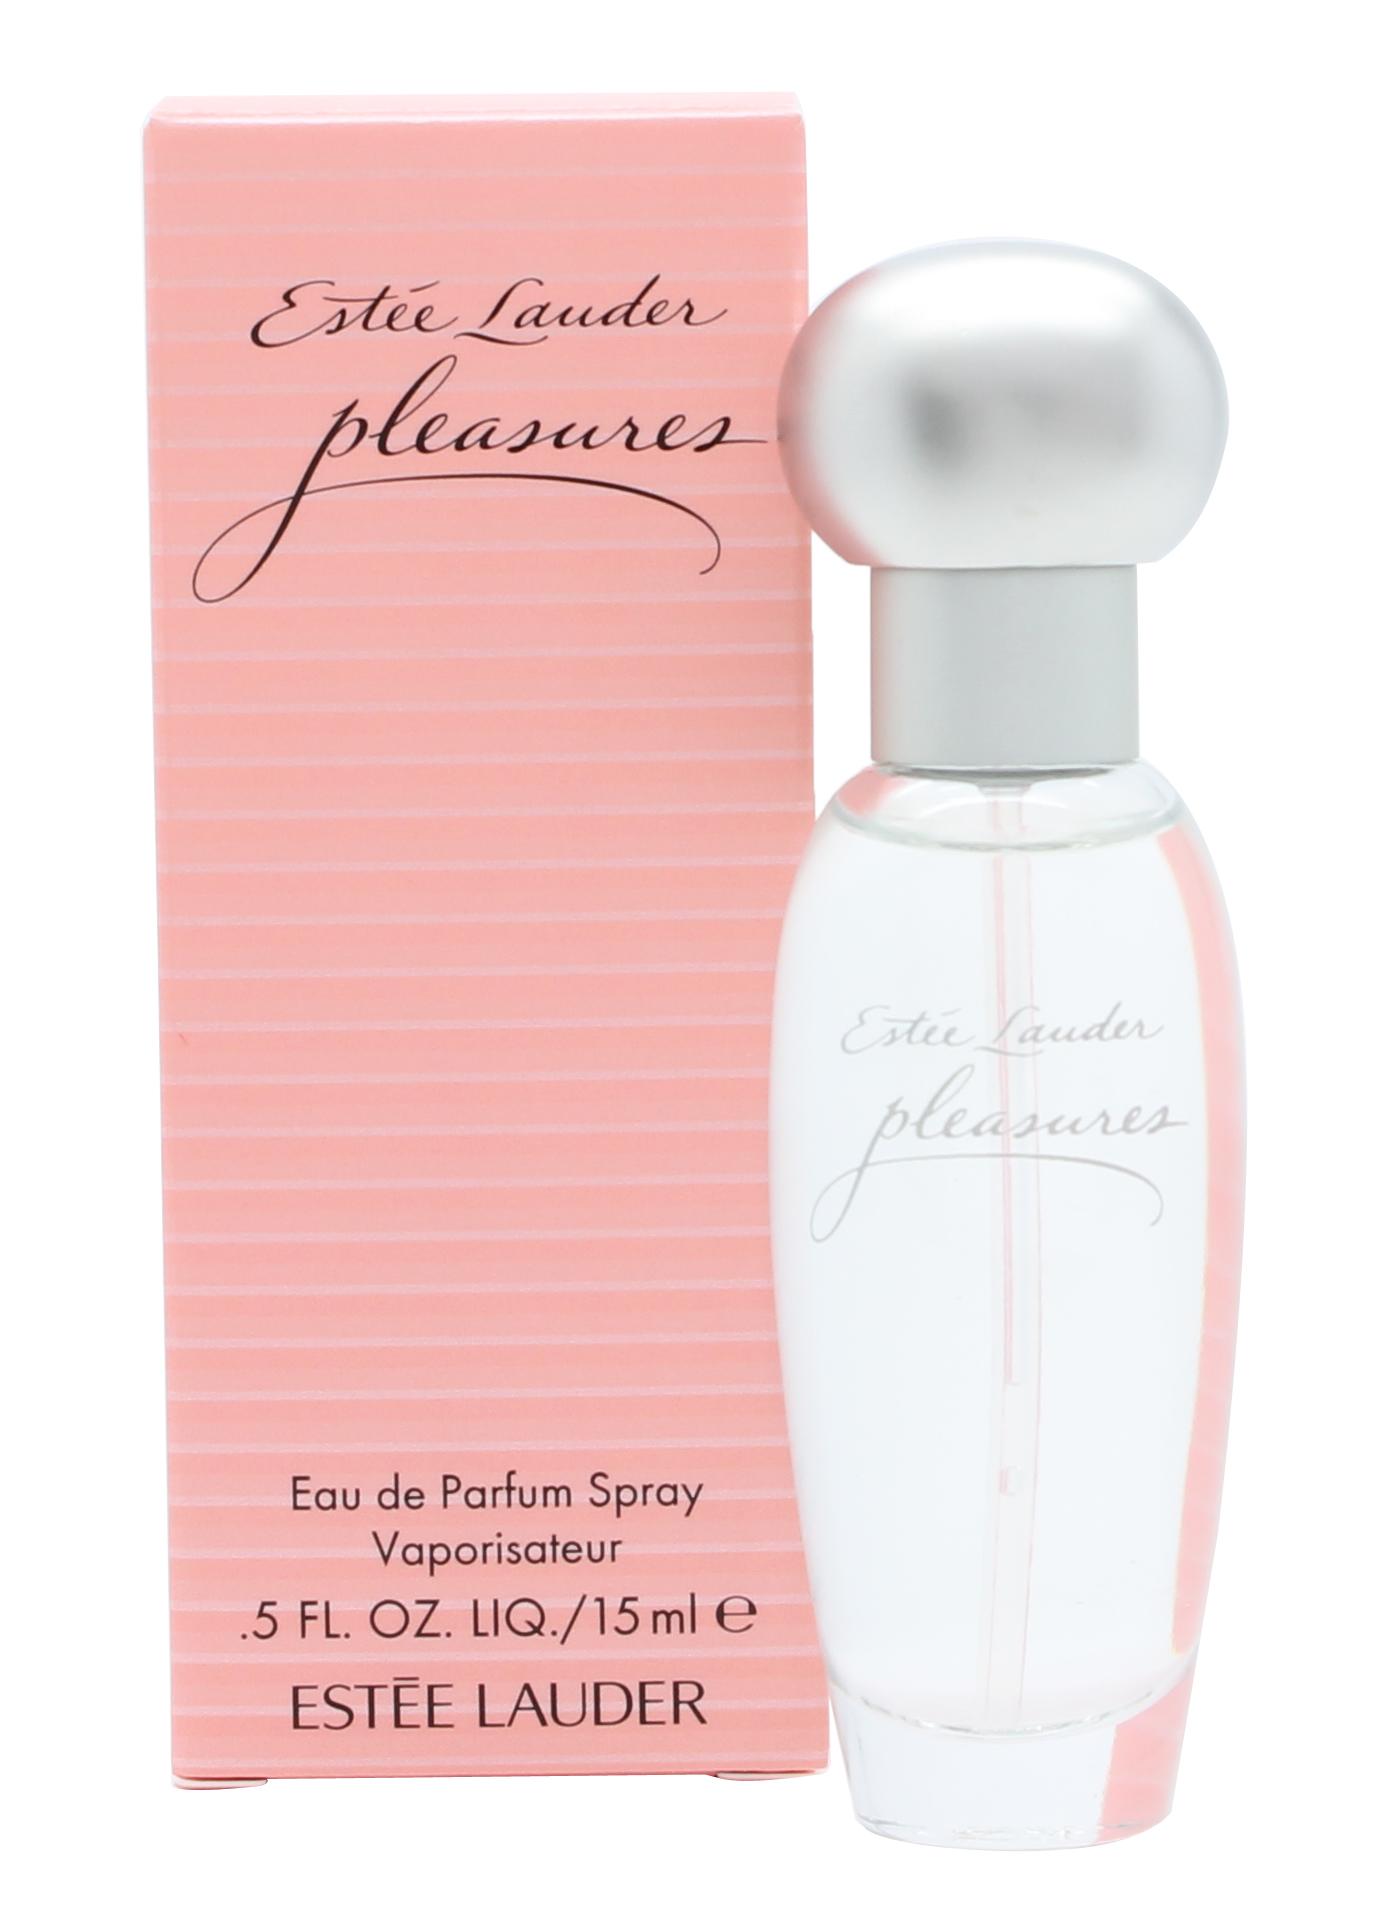 Estee Lauder Pleasures Eau de Parfum 15ml Spray